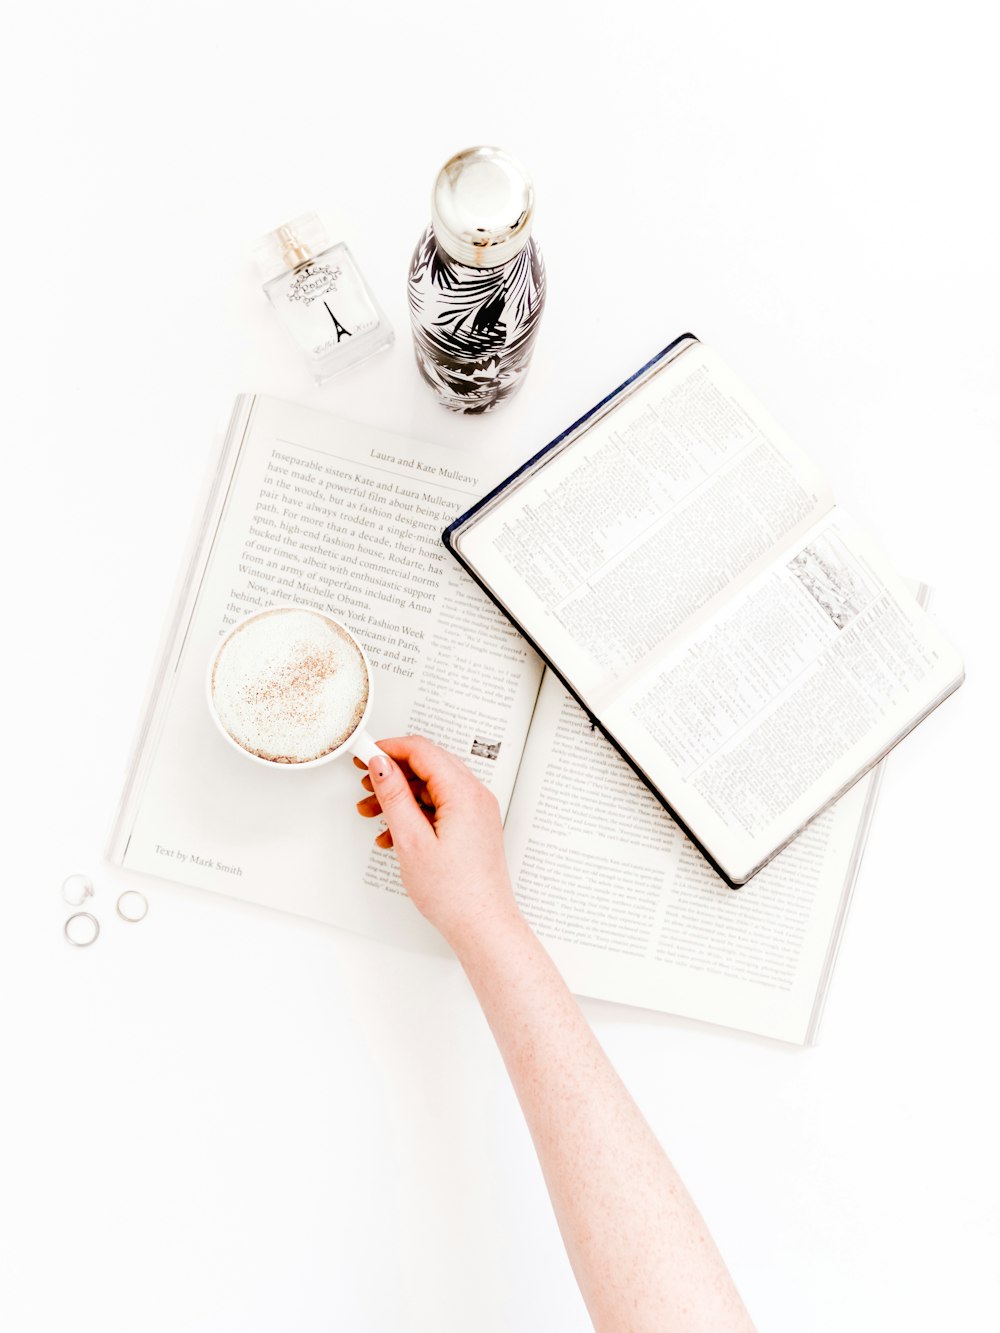 Cappuccino en taza blanca en libros abiertos